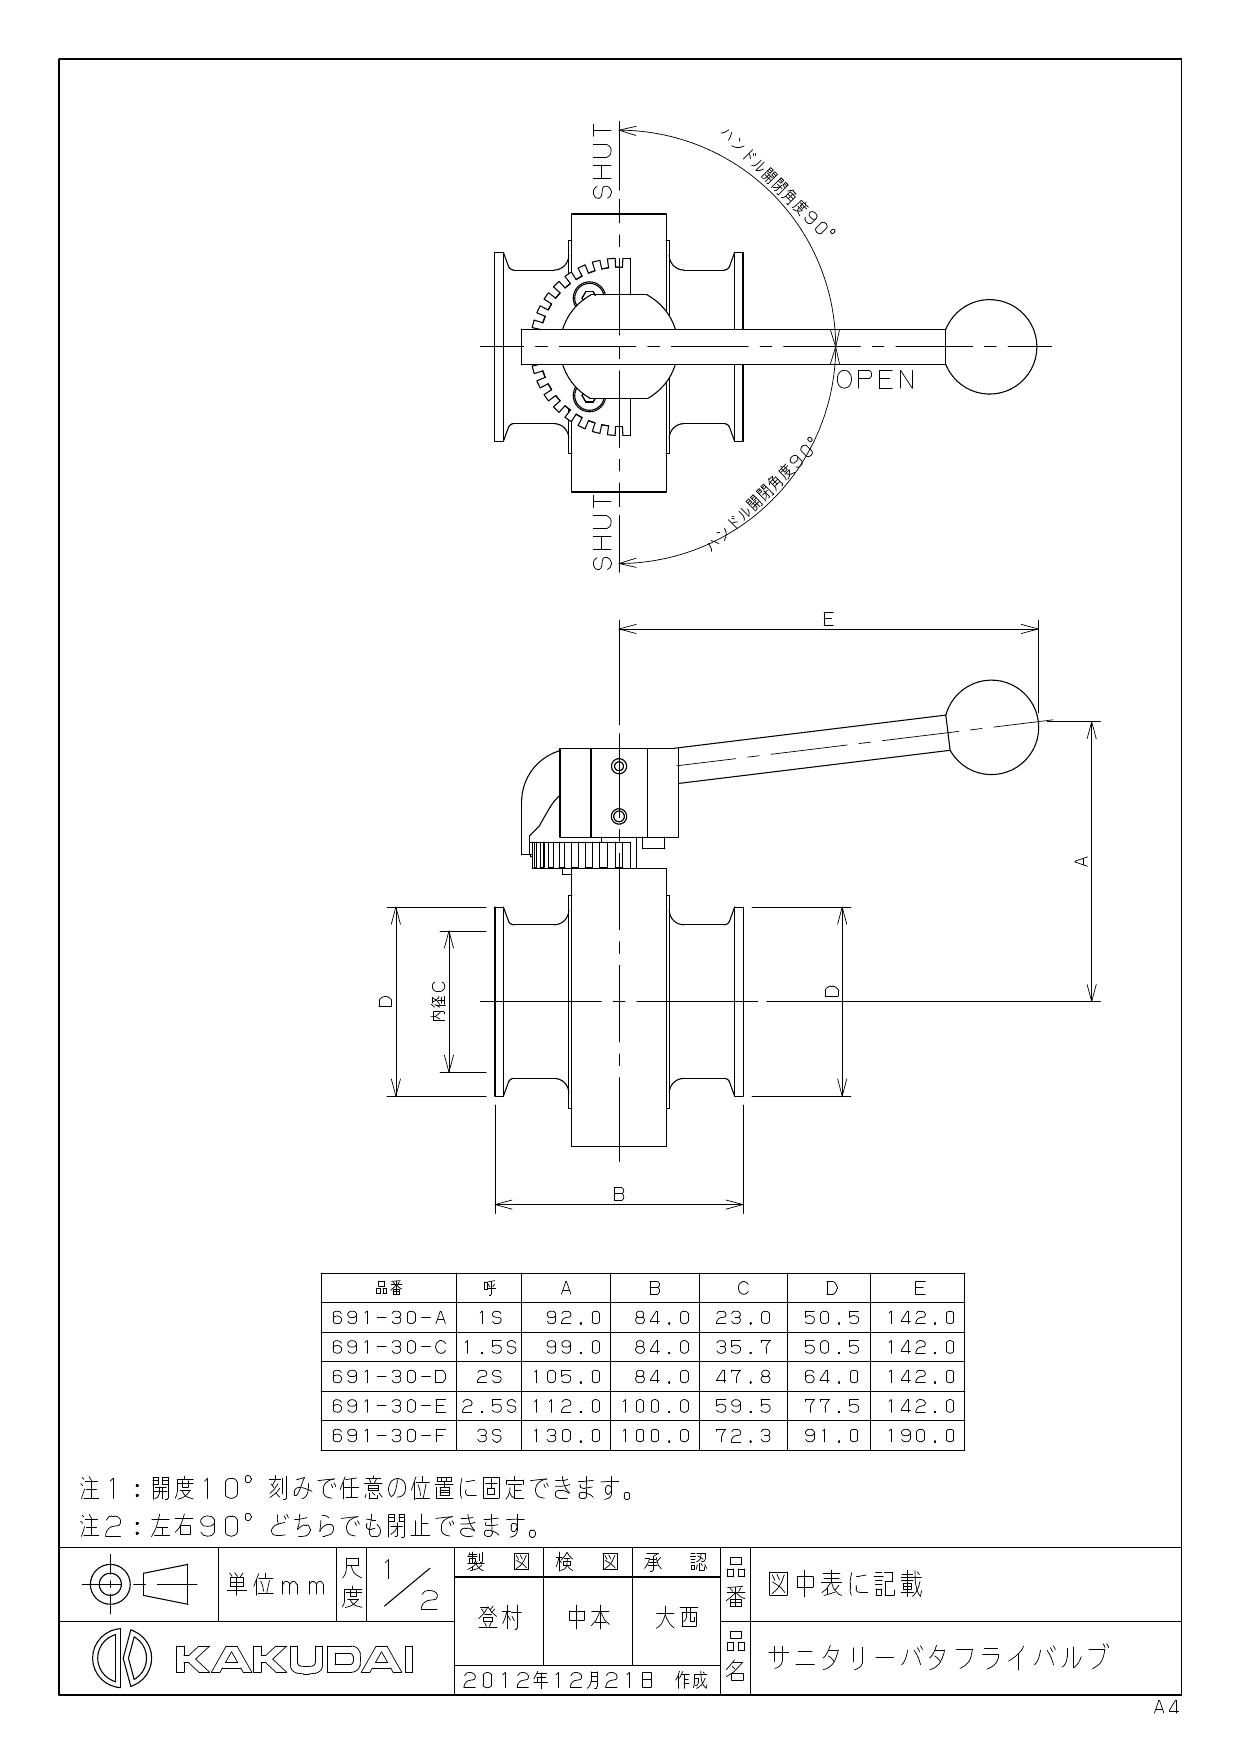 カクダイ 691-30-C商品図面 | 通販 プロストア ダイレクト